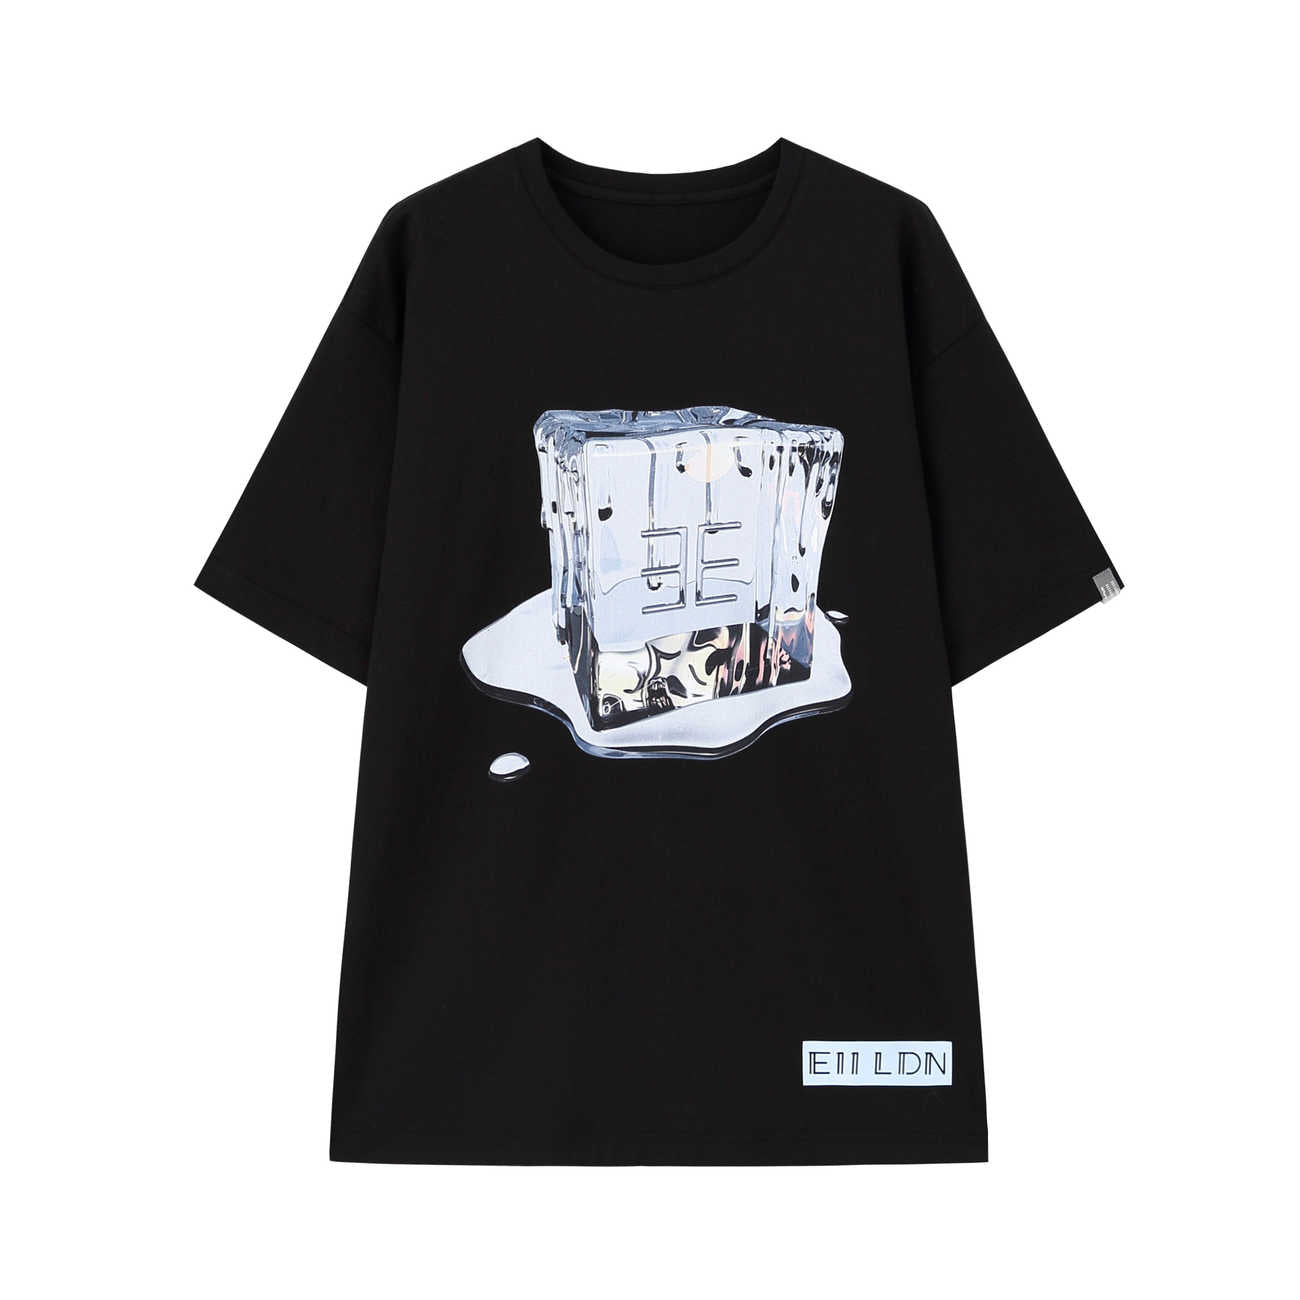 Unisex Melting Ice T-shirt (Black)